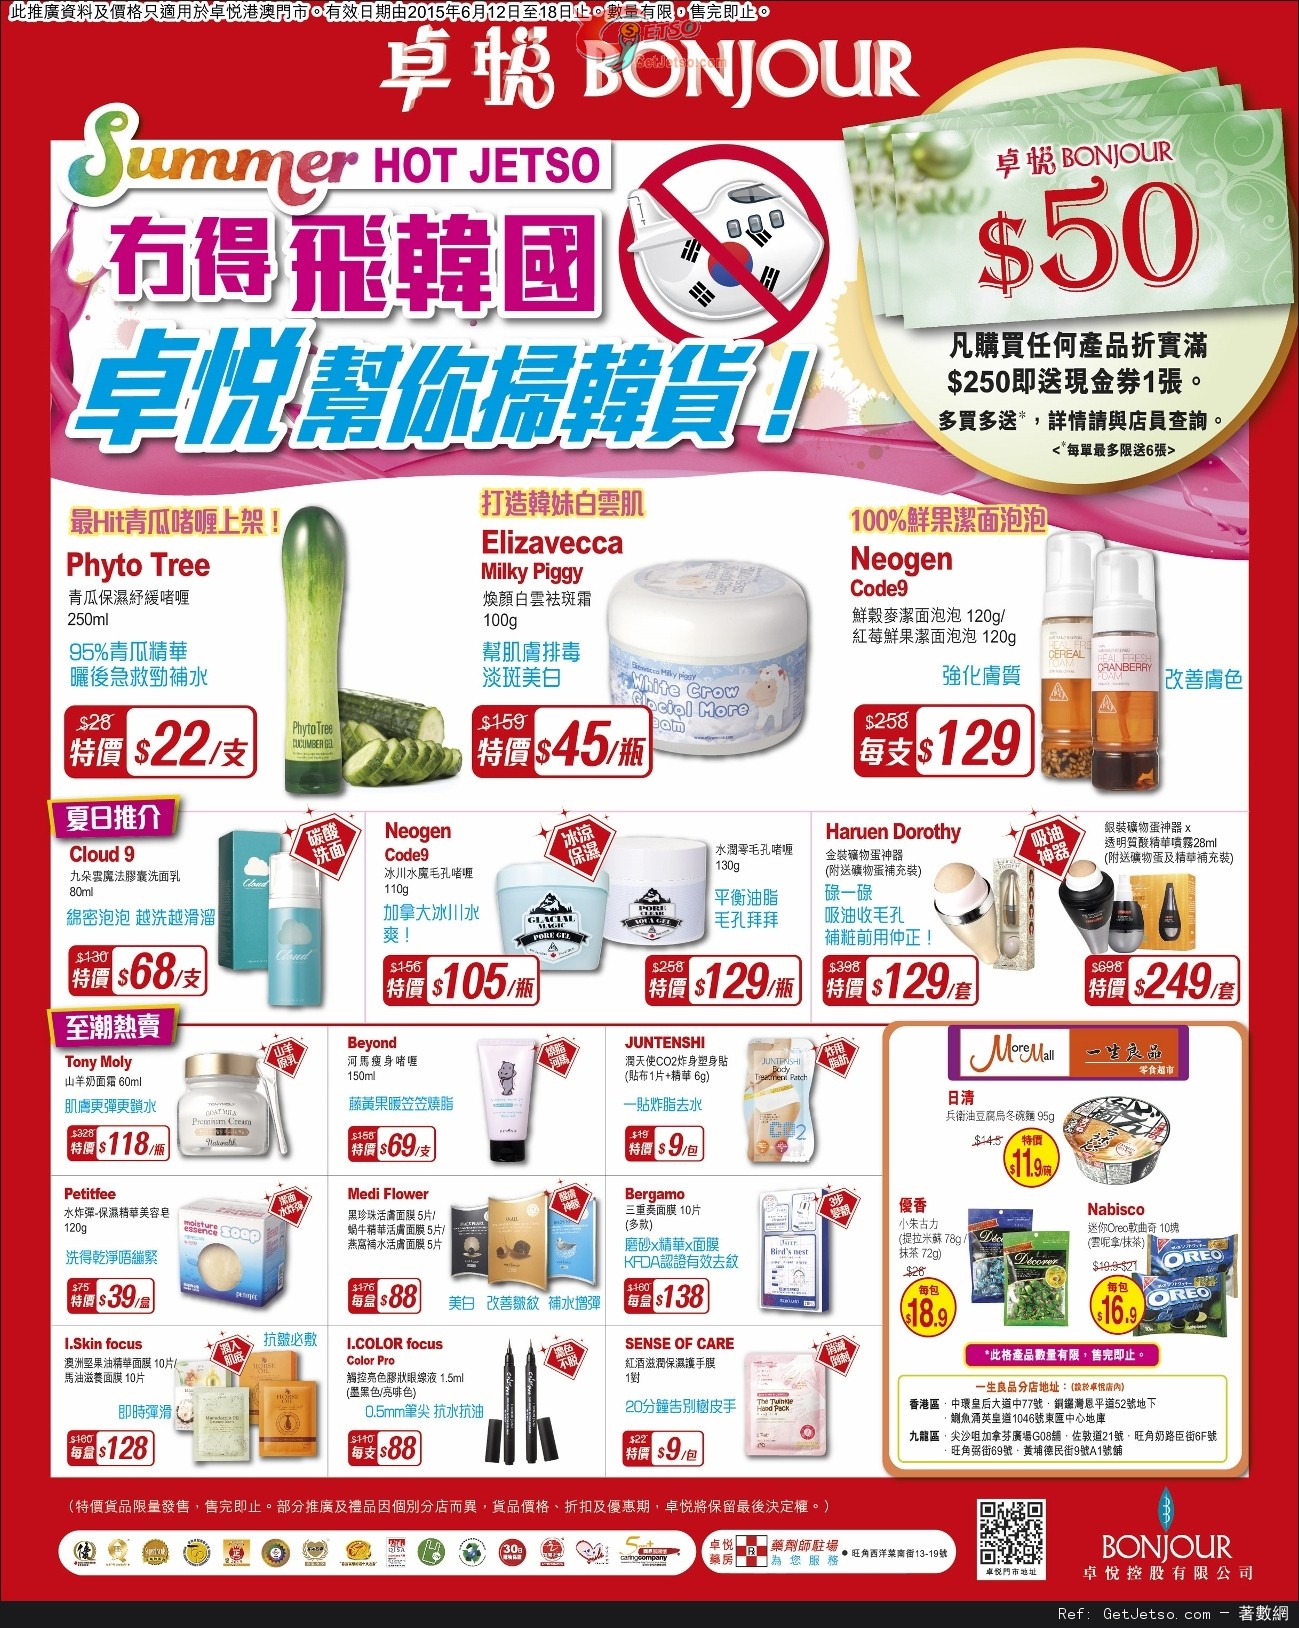 卓悅韓國護膚產品購買優惠(至15年6月18日)圖片1